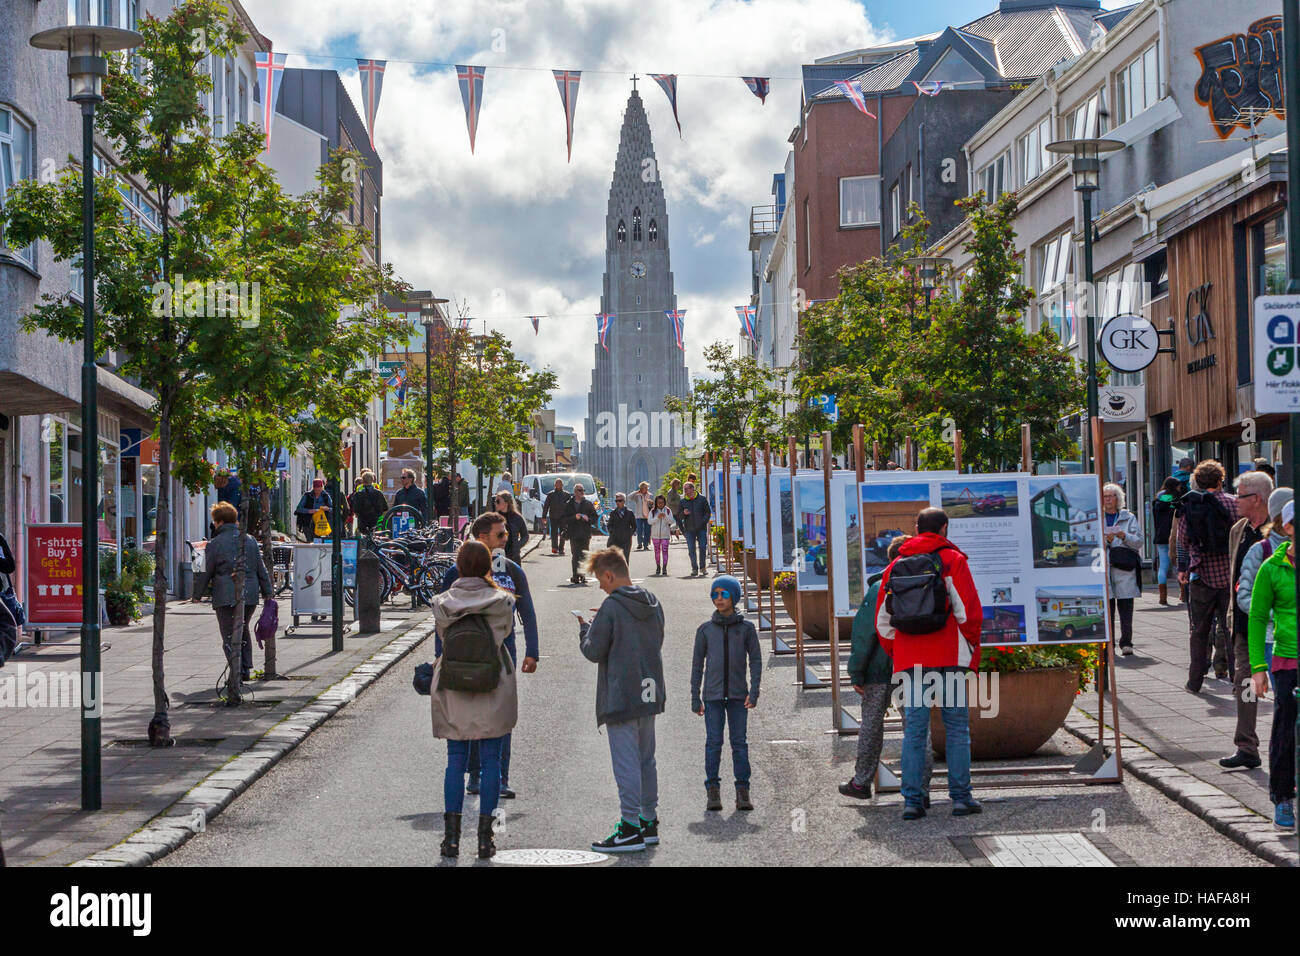 La gente, los turistas que caminan en el distrito de compras en Reykjavik, Islandia y la Iglesia Luterana Hallgrimskirkja es visto. Foto de stock